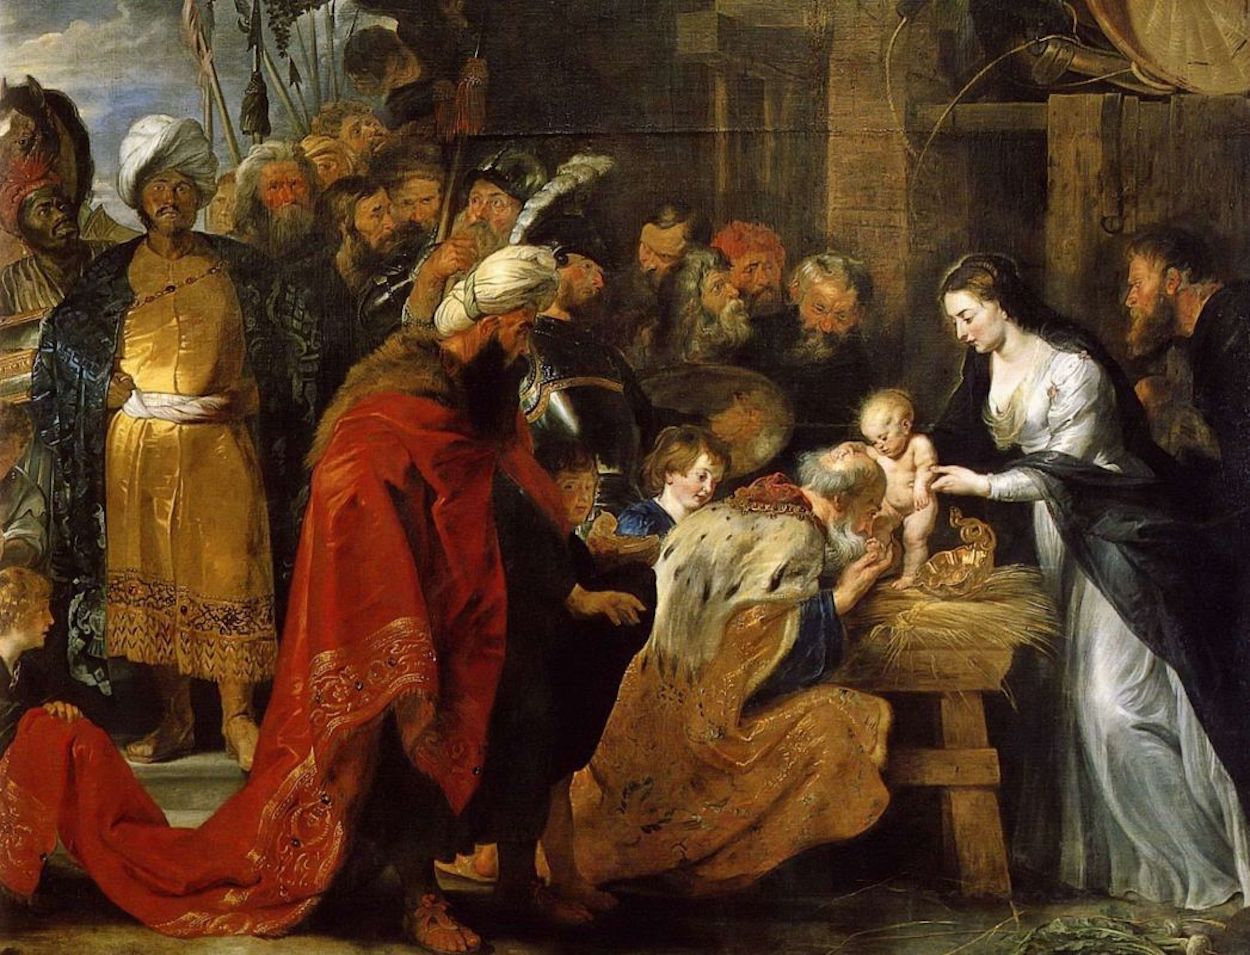 Aanbidding der wijzen by Peter Paul Rubens - 1616-1617 - 251 × 338 cm 